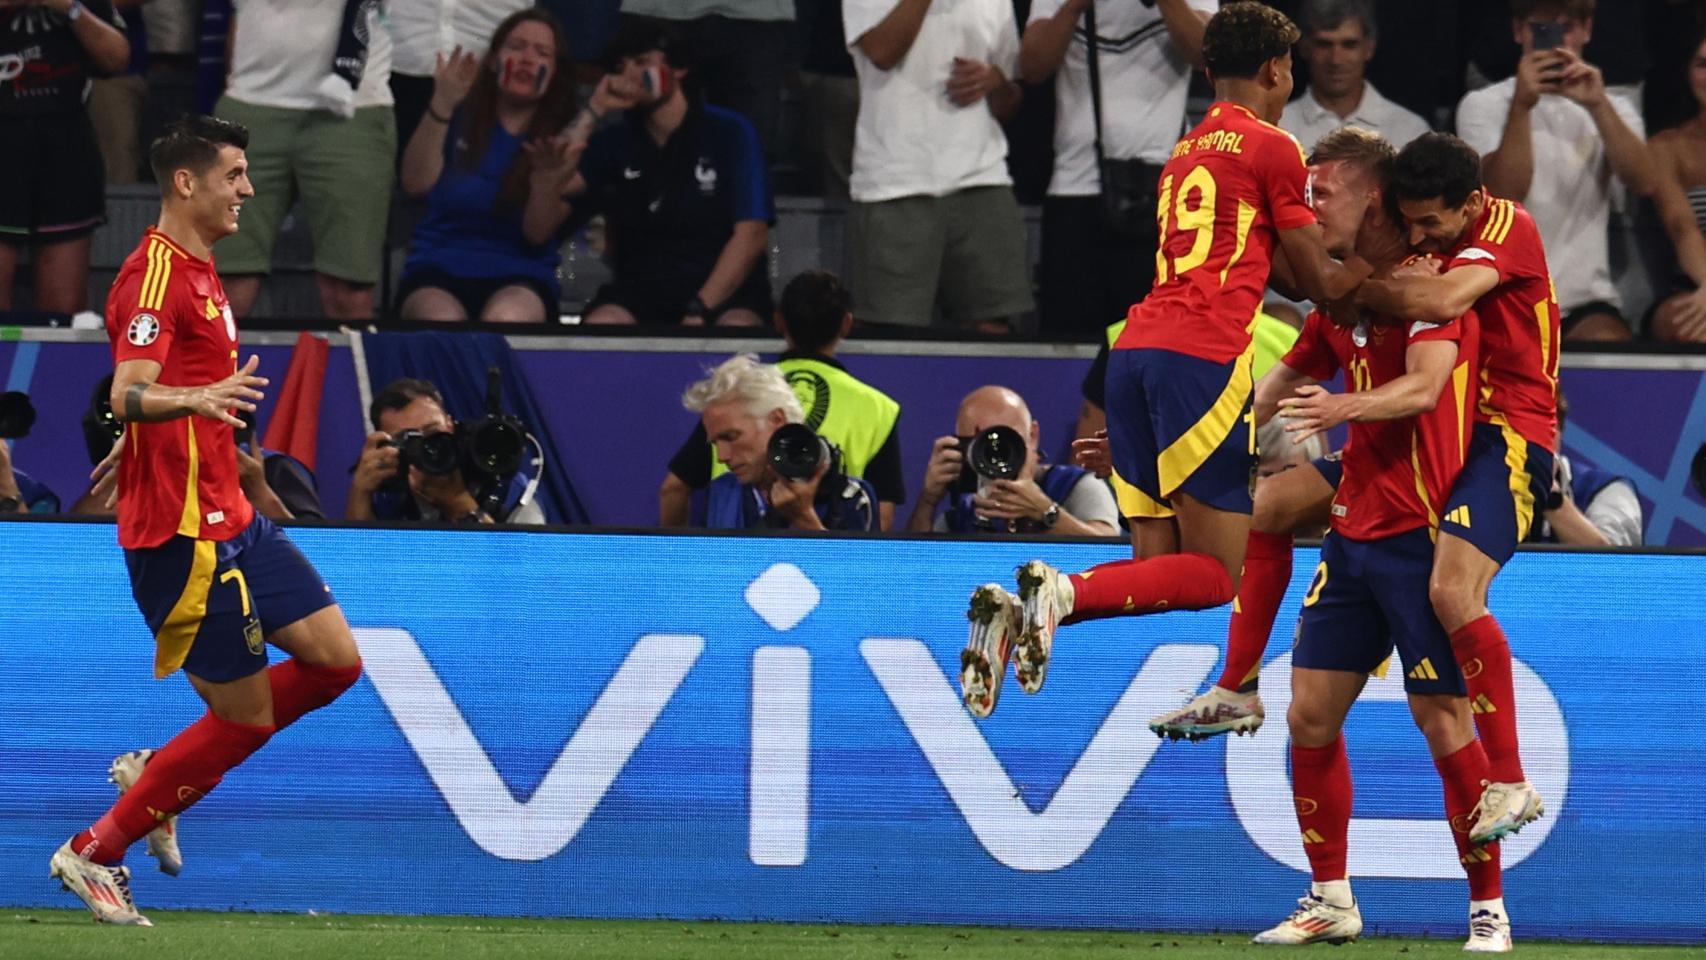 Los jugadores de España celebrando con el logo de vivo en las pantallas.